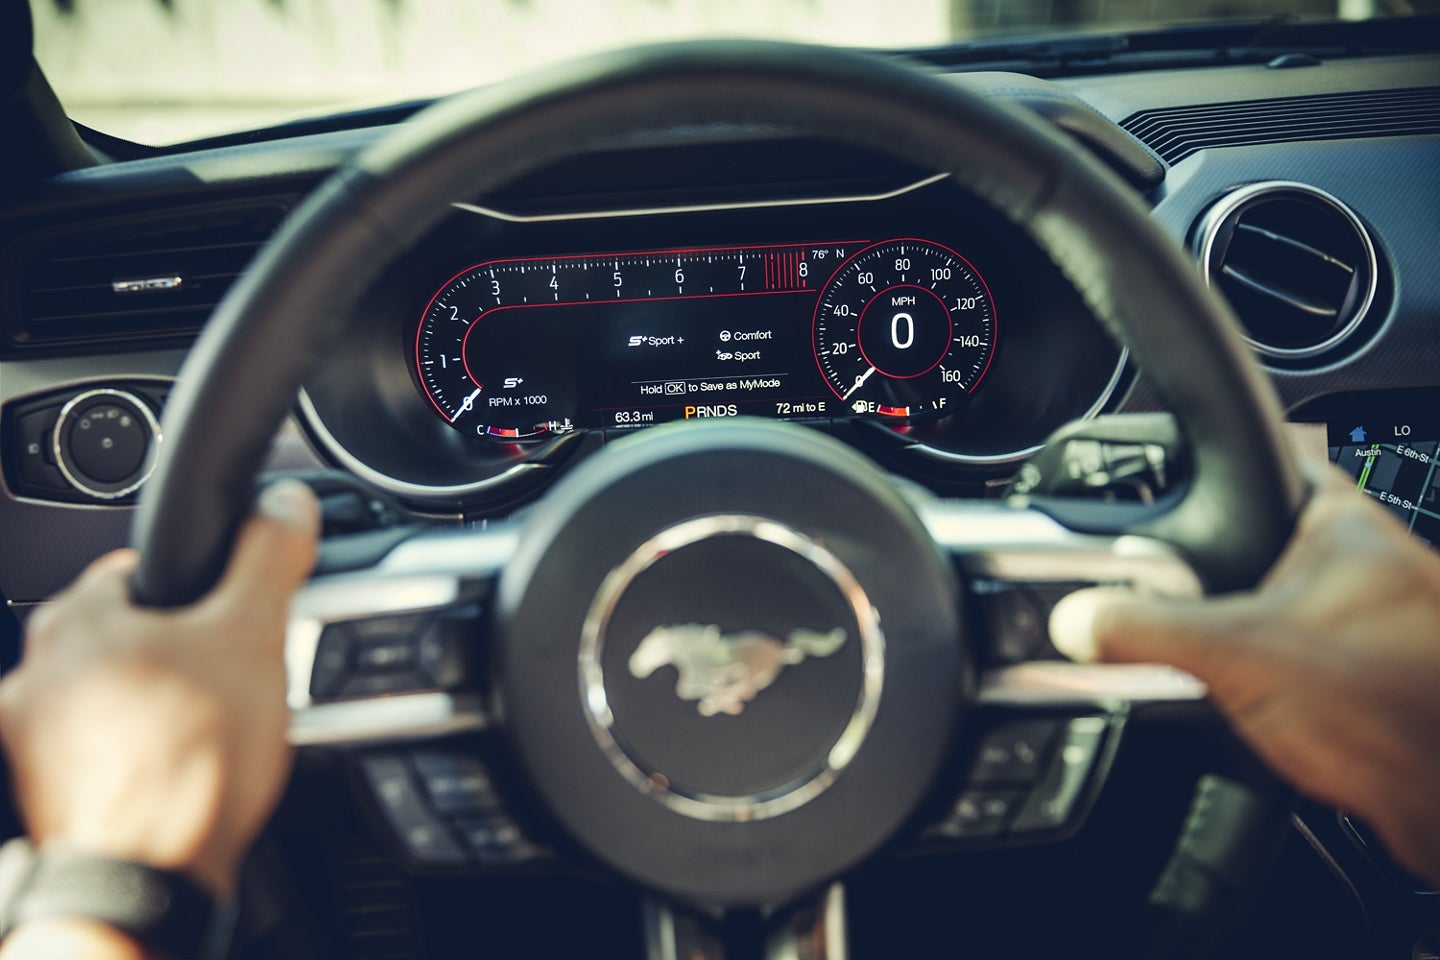 Steering Wheel of the 2020 Mustang